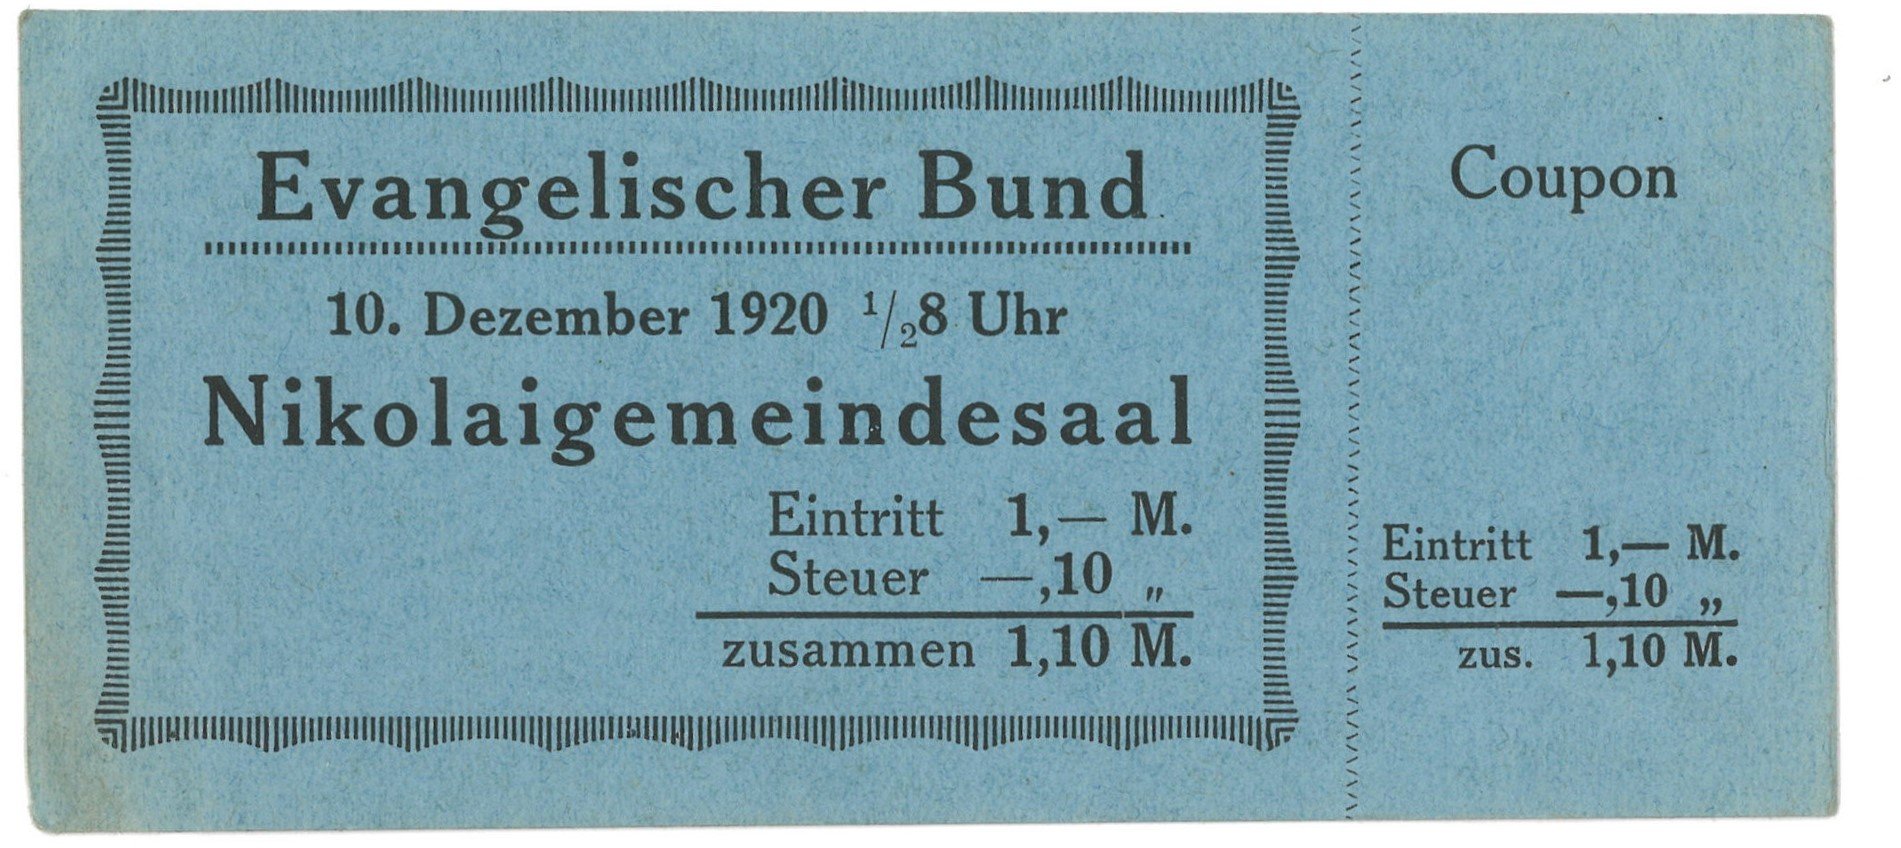 Veranstaltung des Evangelischen Bundes im Nikolaigemeindesaal Potsdam 1920 (Landesgeschichtliche Vereinigung für die Mark Brandenburg e.V., Archiv CC BY)